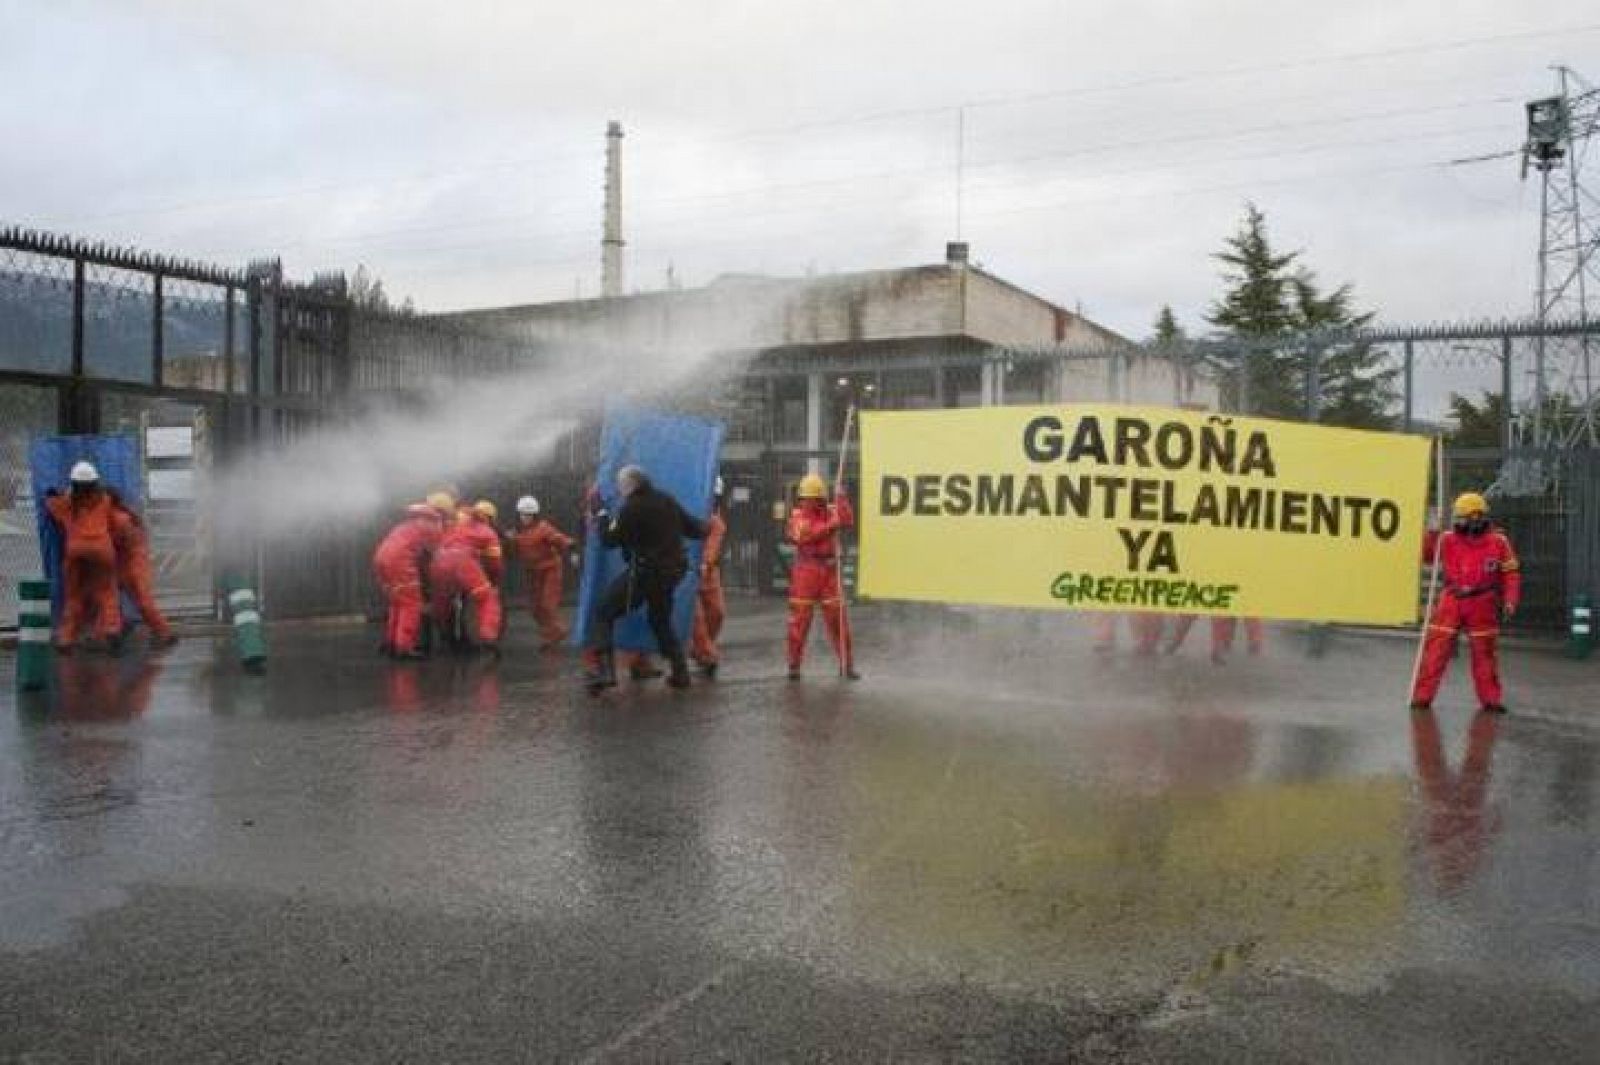 Los activistas de Greenpeace durante la acción en la central nuclear de Garoña.